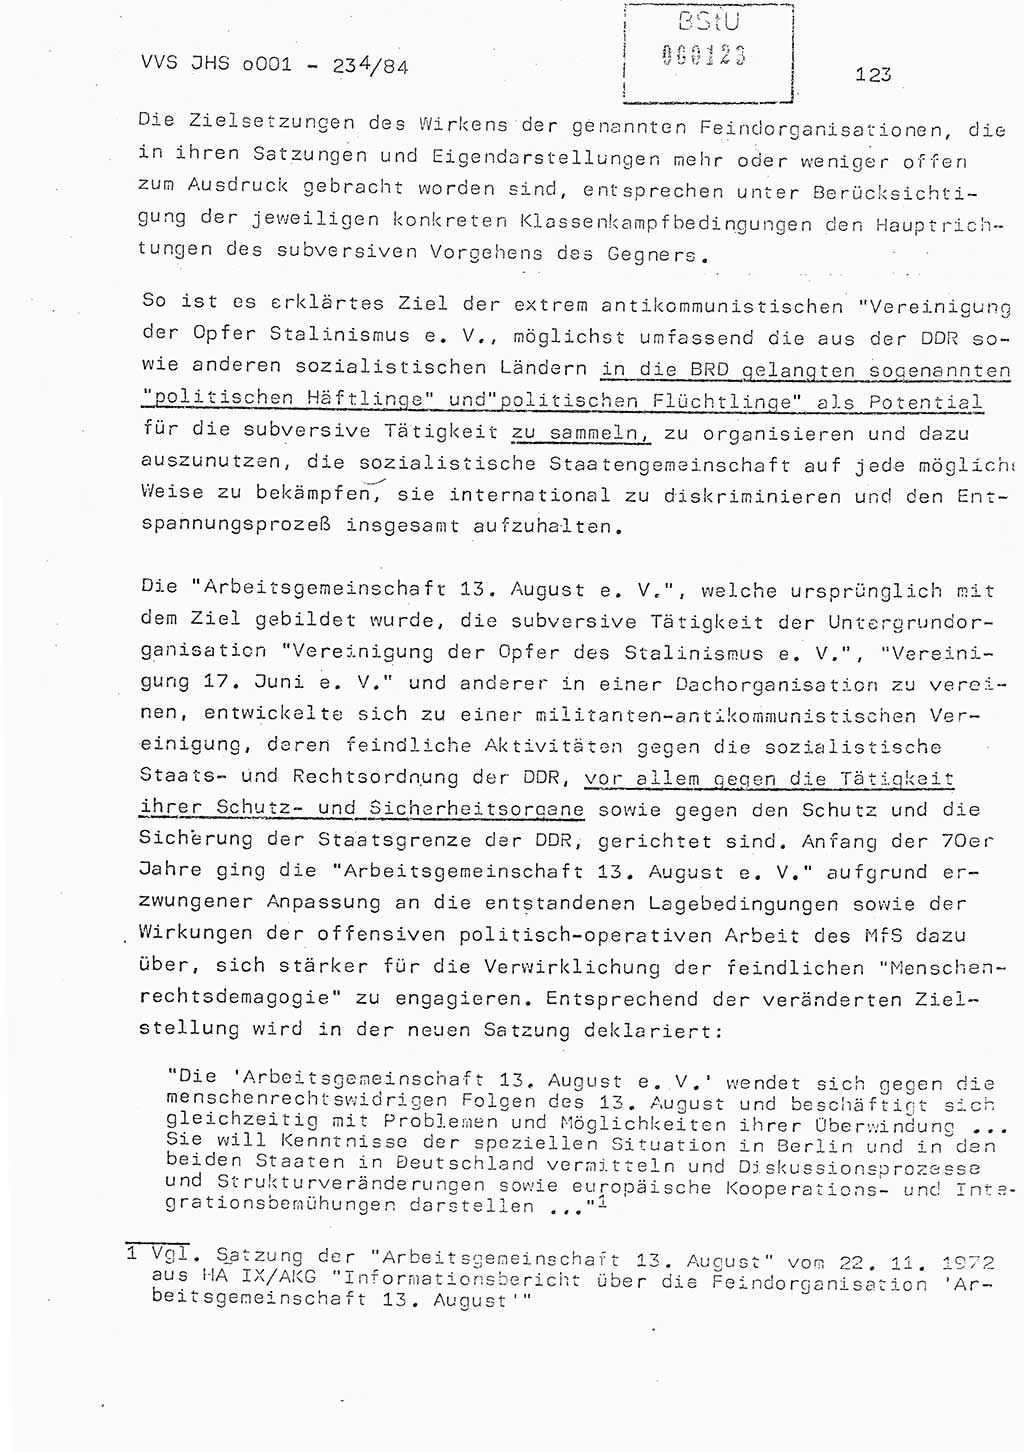 Dissertation Oberst Siegfried Rataizick (Abt. ⅩⅣ), Oberstleutnant Volkmar Heinz (Abt. ⅩⅣ), Oberstleutnant Werner Stein (HA Ⅸ), Hauptmann Heinz Conrad (JHS), Ministerium für Staatssicherheit (MfS) [Deutsche Demokratische Republik (DDR)], Juristische Hochschule (JHS), Vertrauliche Verschlußsache (VVS) o001-234/84, Potsdam 1984, Seite 123 (Diss. MfS DDR JHS VVS o001-234/84 1984, S. 123)